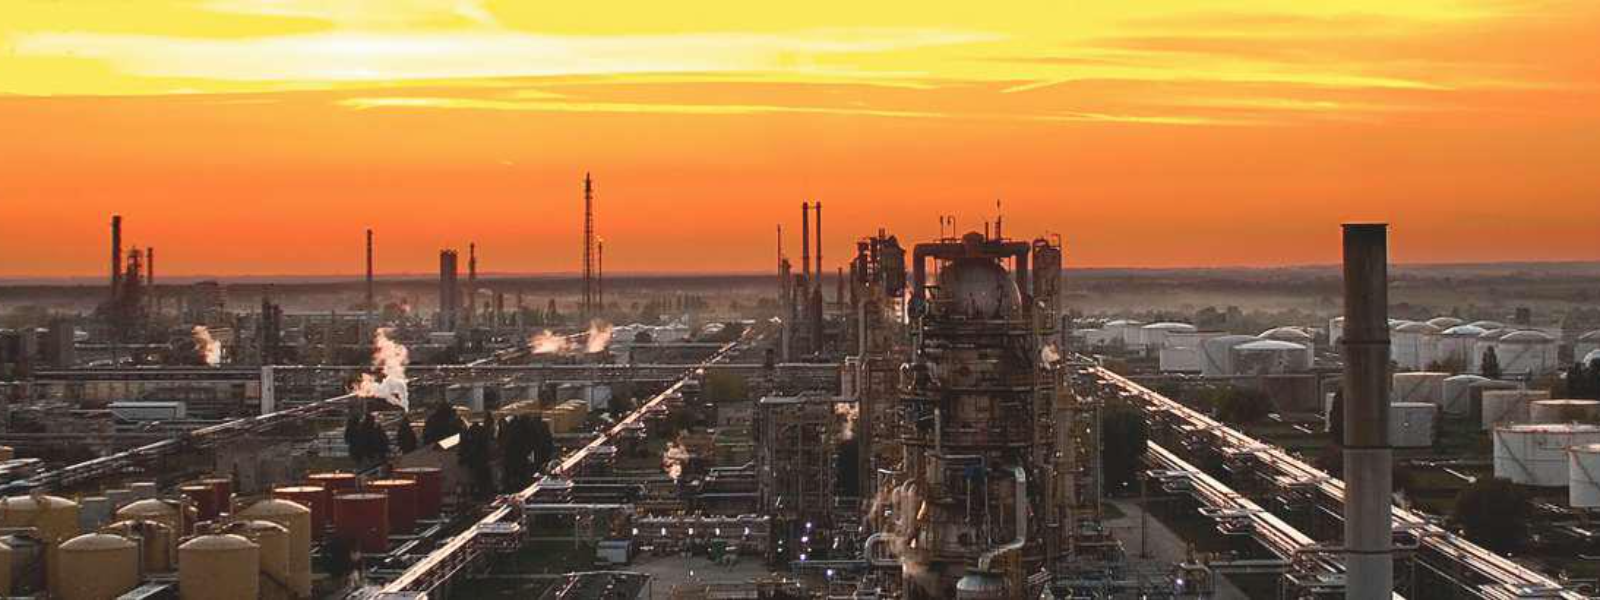 ORLEN EESTI OÜ - Orlen on Kesk-Euroopa suuremaid kütusefirmasid, millele pandi alus juba poolteist sajandit tagasi. Eest...